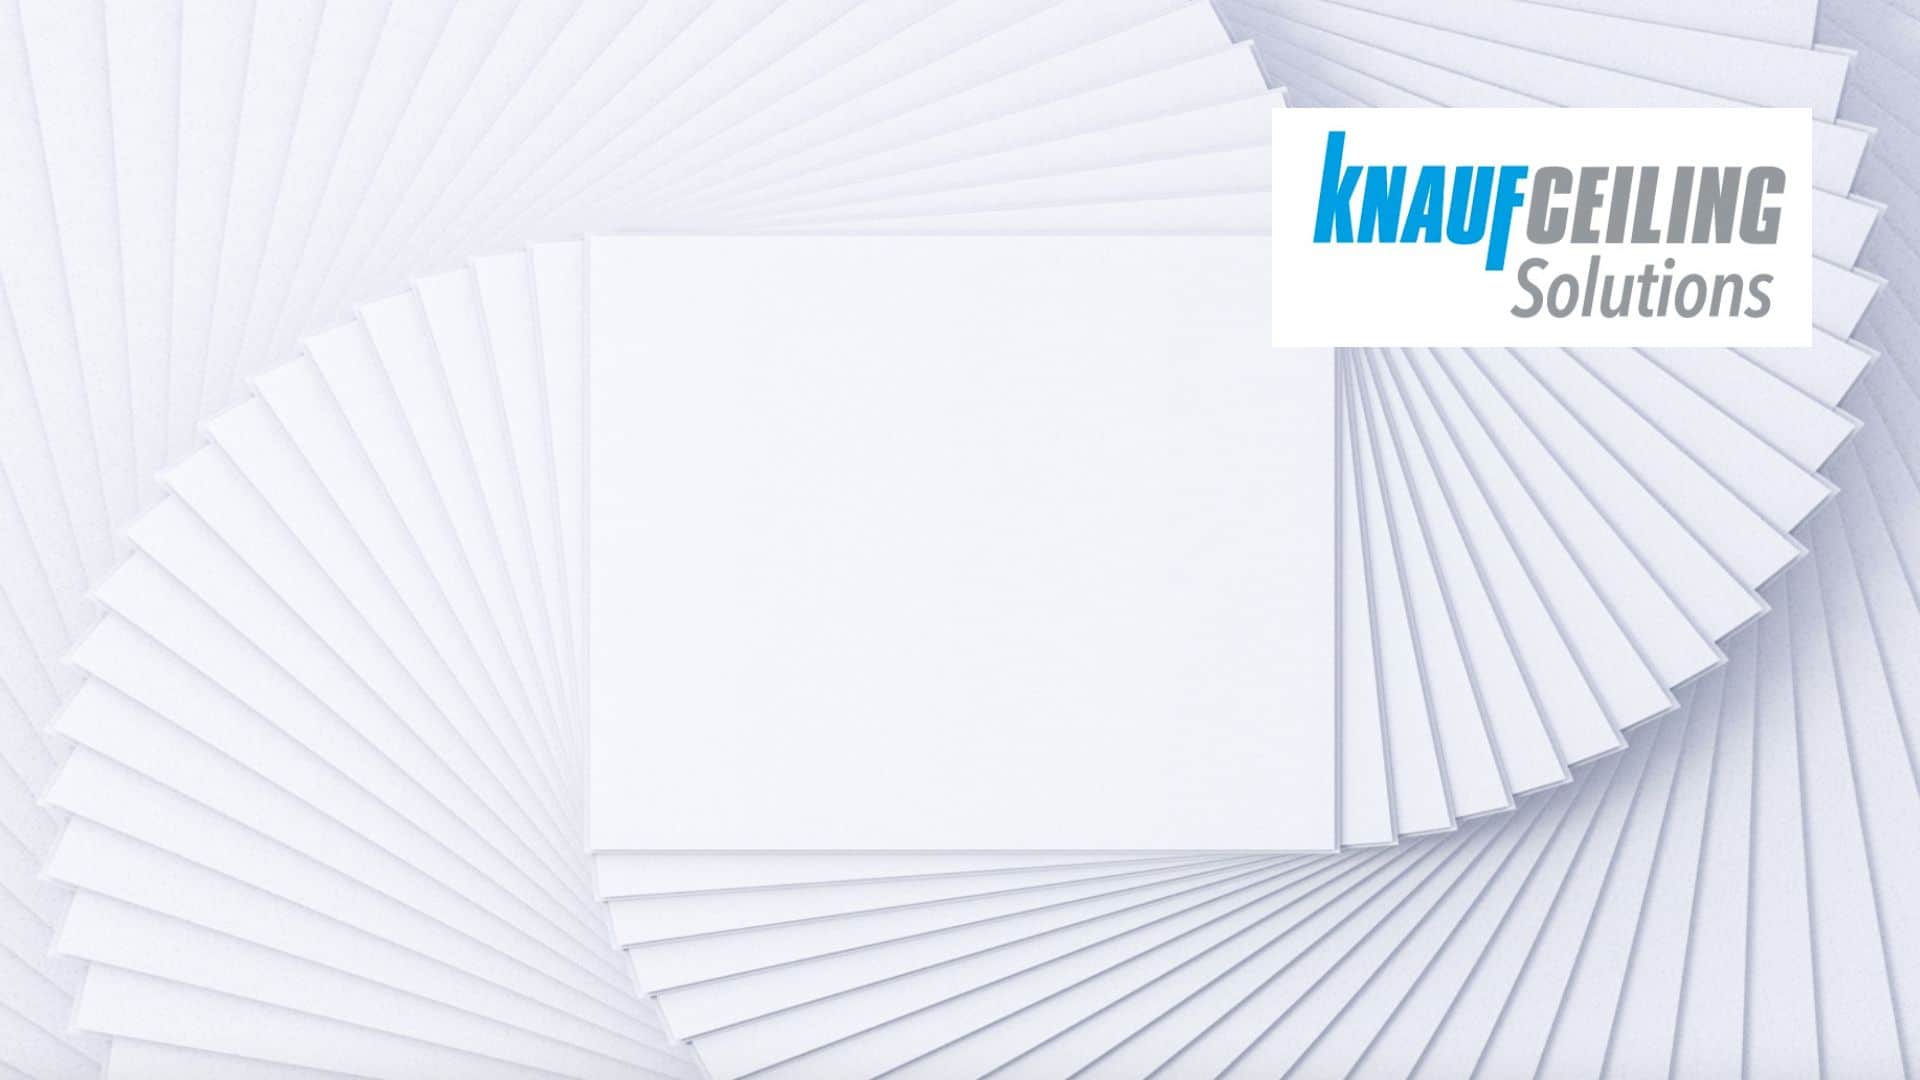 KNAUF CEILING SOLUTIONS lève le voile sur ADAGIO, sa nouvelle gamme minérale de plafonds : Visuellement saisissante et acoustiquement performante